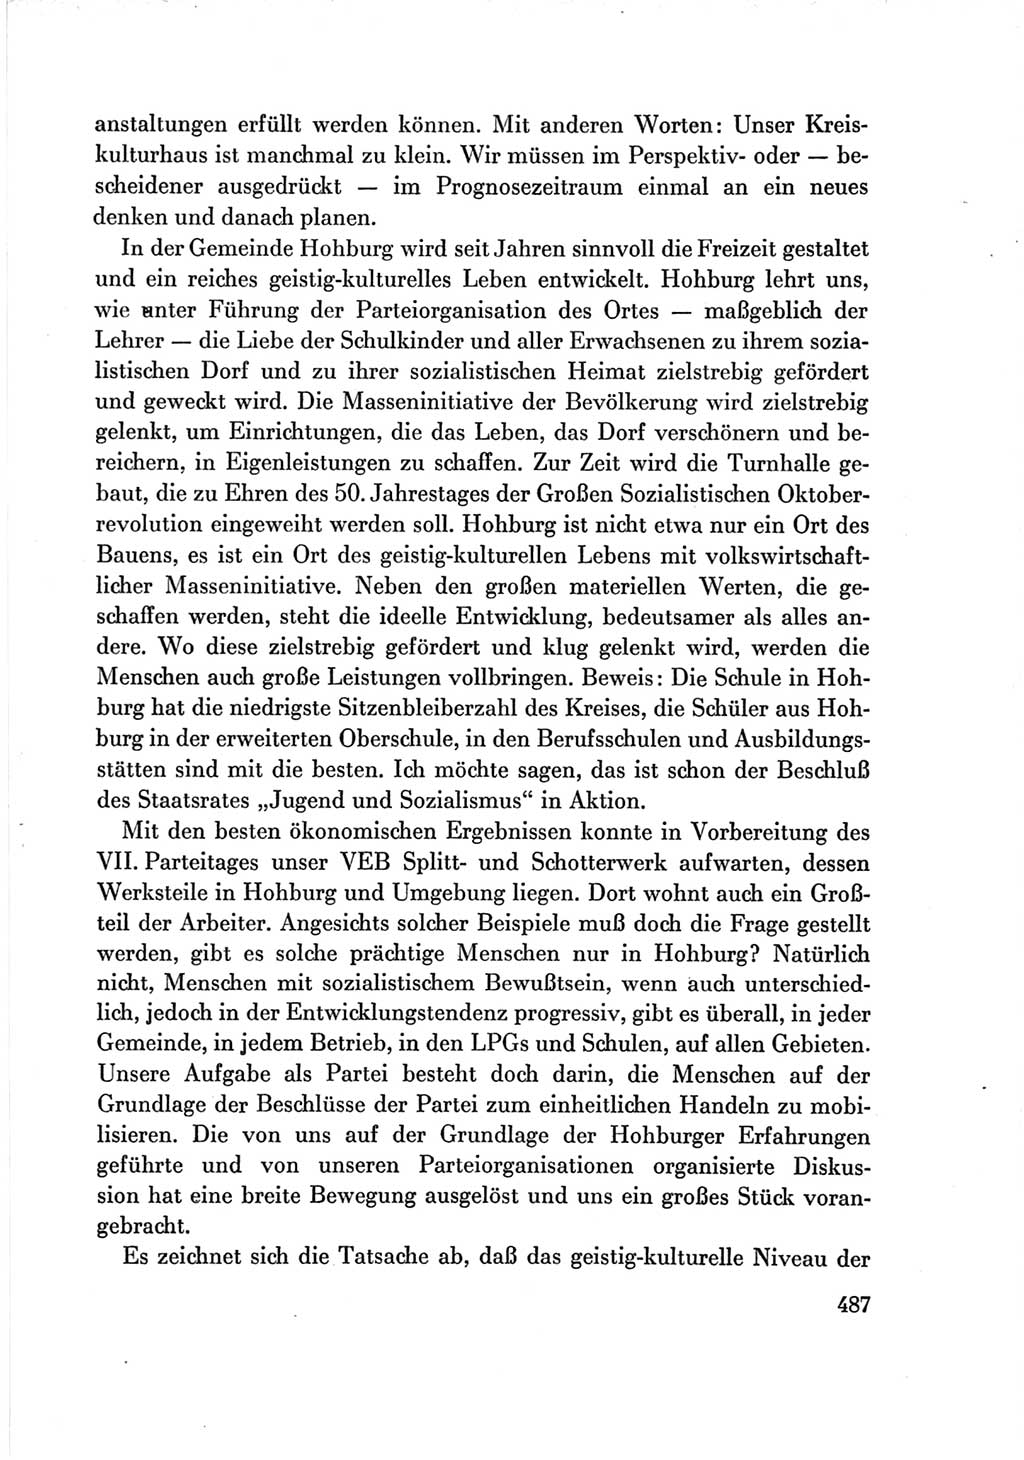 Protokoll der Verhandlungen des Ⅶ. Parteitages der Sozialistischen Einheitspartei Deutschlands (SED) [Deutsche Demokratische Republik (DDR)] 1967, Band Ⅲ, Seite 487 (Prot. Verh. Ⅶ. PT SED DDR 1967, Bd. Ⅲ, S. 487)